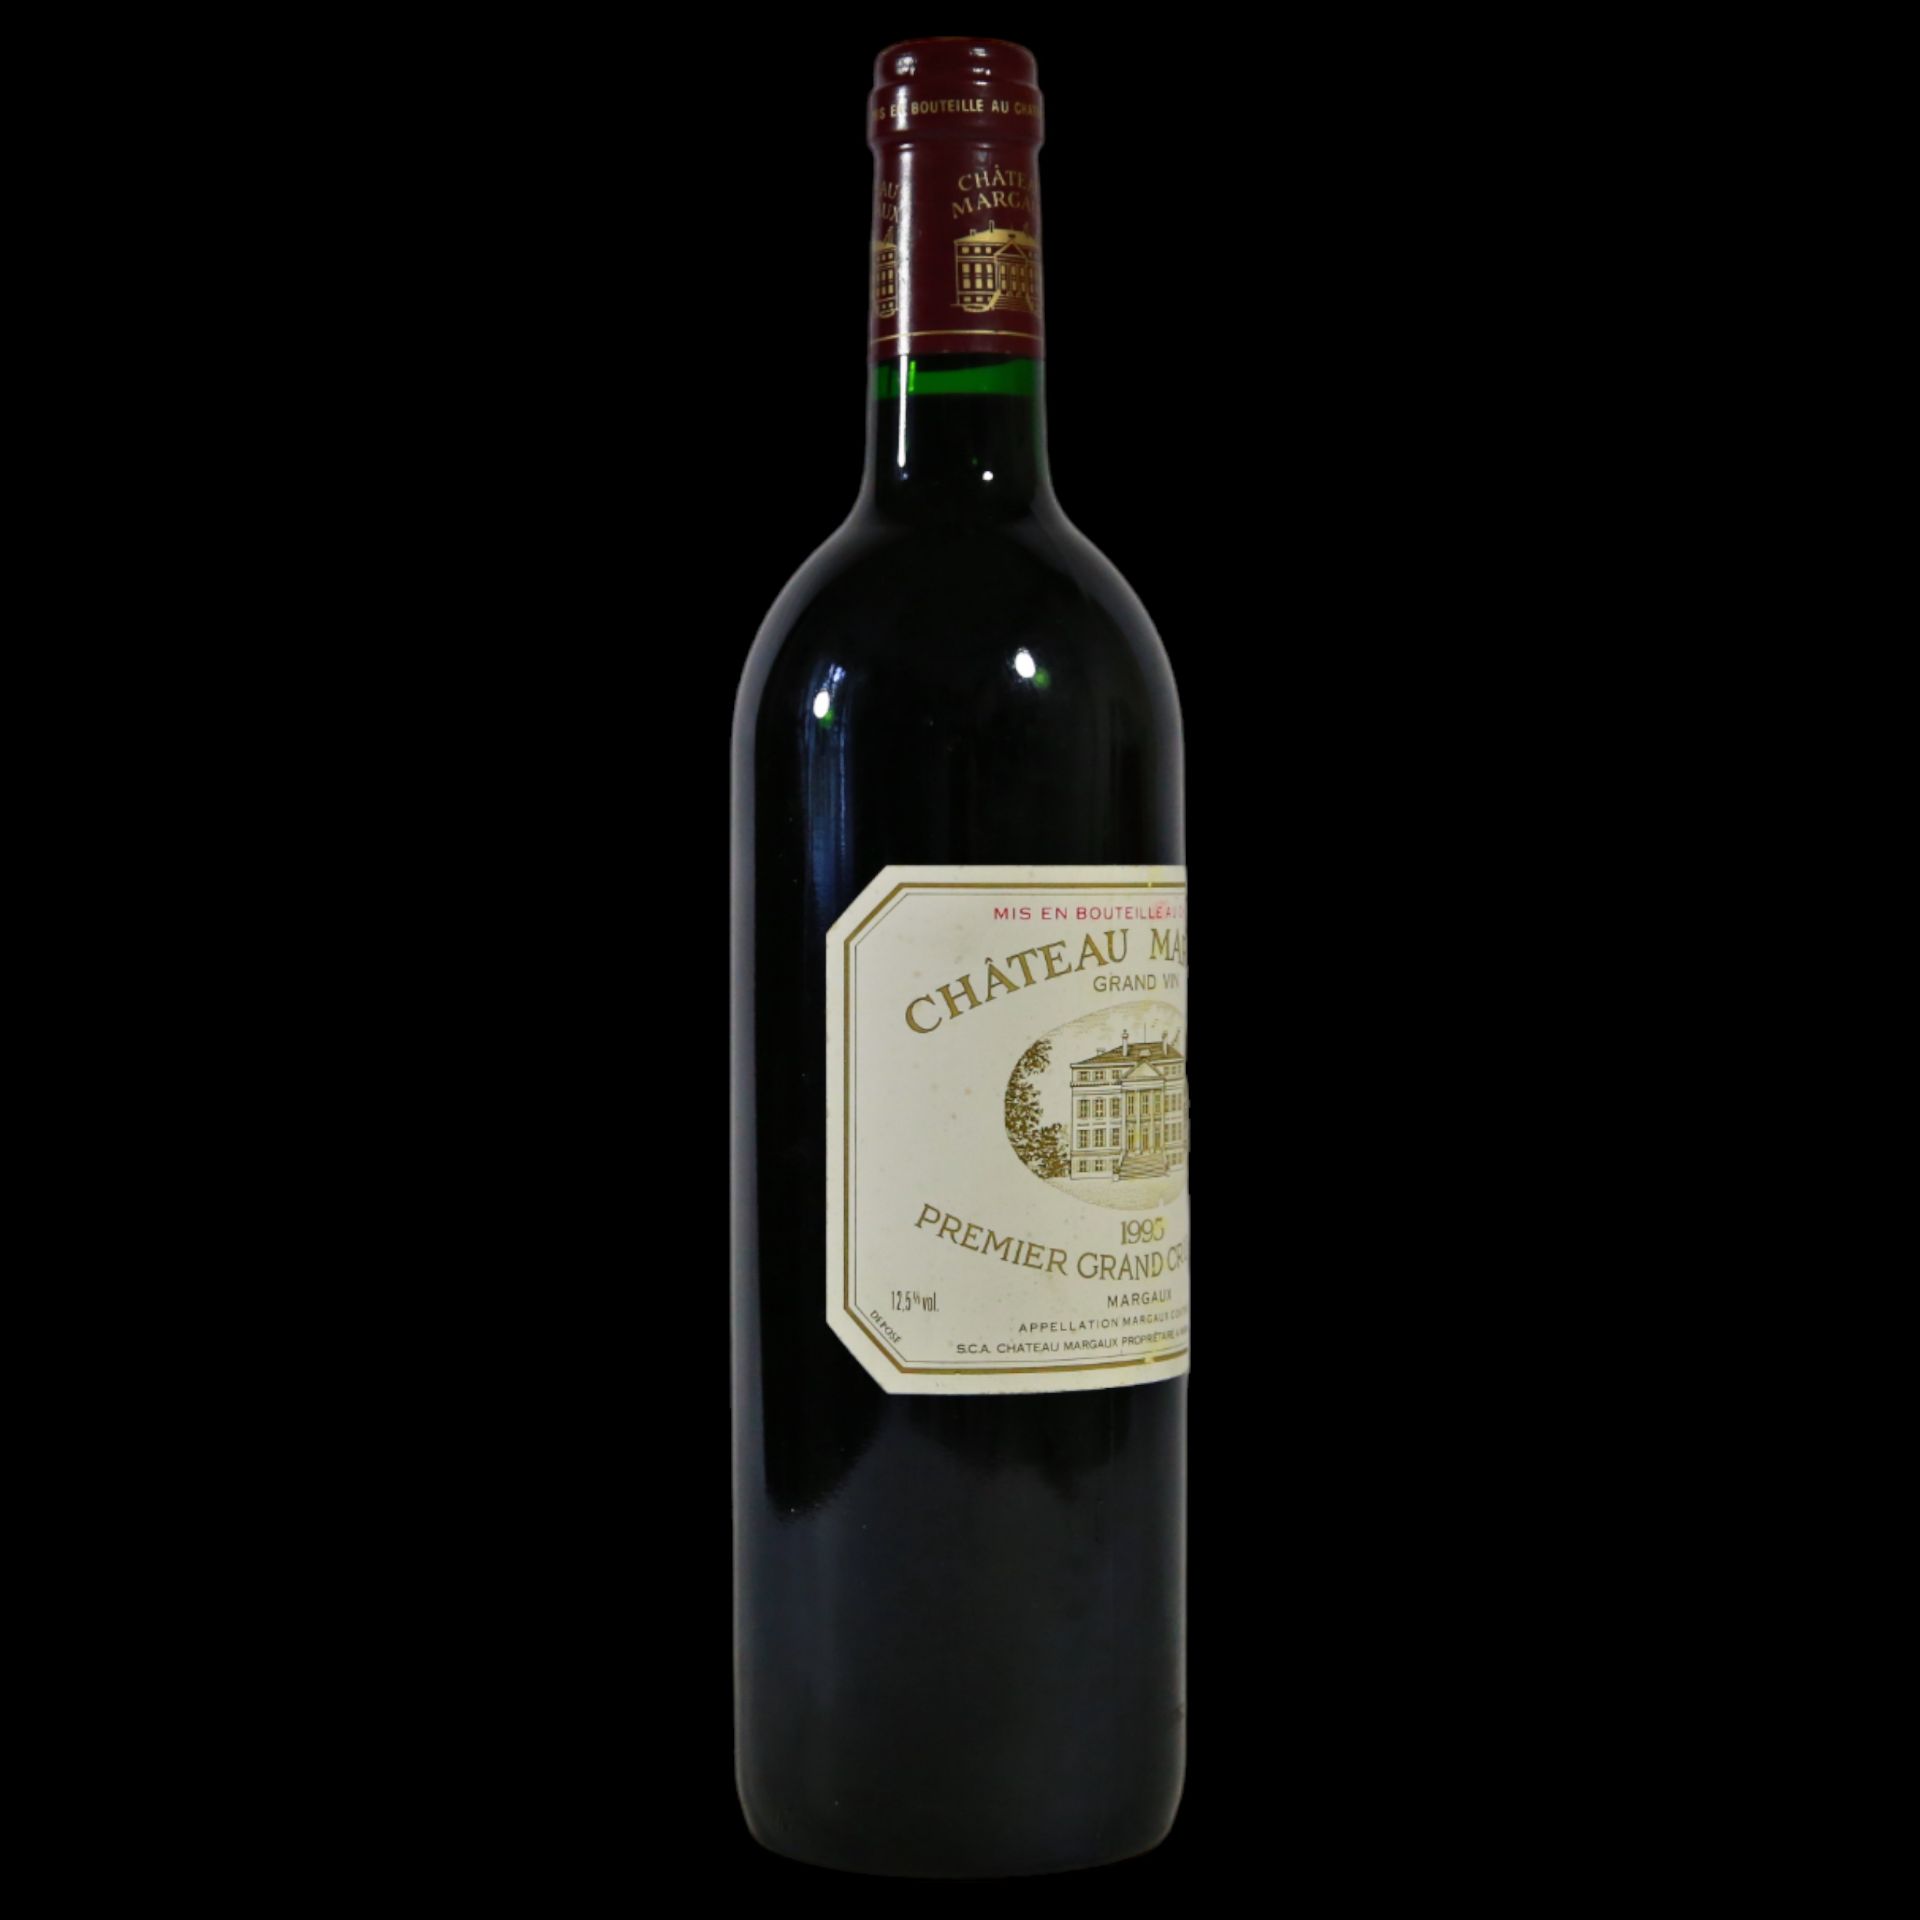 Bottle Vintage Chateau Margaux 1995, Premier Cru Classe. - Bild 9 aus 12